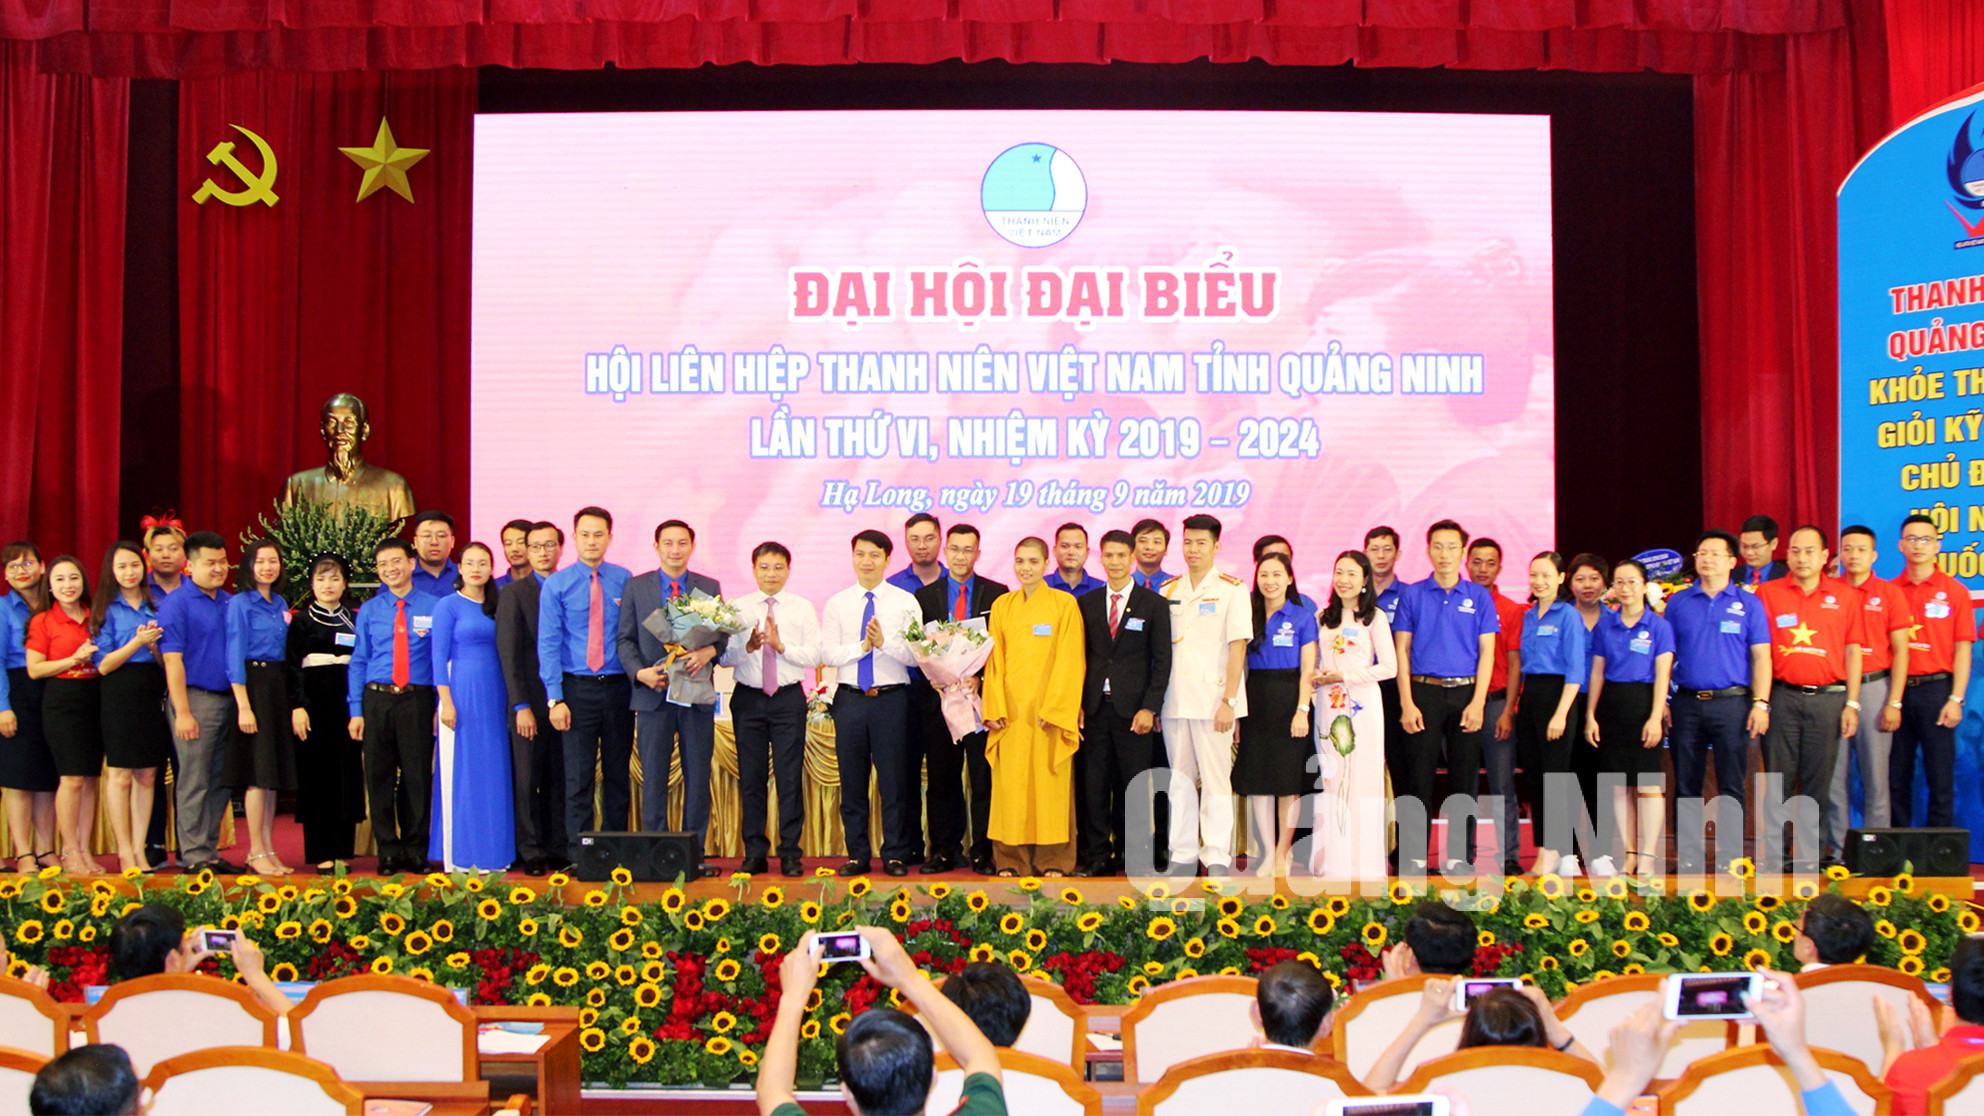 Các thành viên Ủy ban Hội LHTN Việt Nam tỉnh Quảng Ninh khóa VI chụp ảnh lưu niệm cùng lãnh đạo và các vị đại biểu (9-2019). Ảnh: Tạ Quân